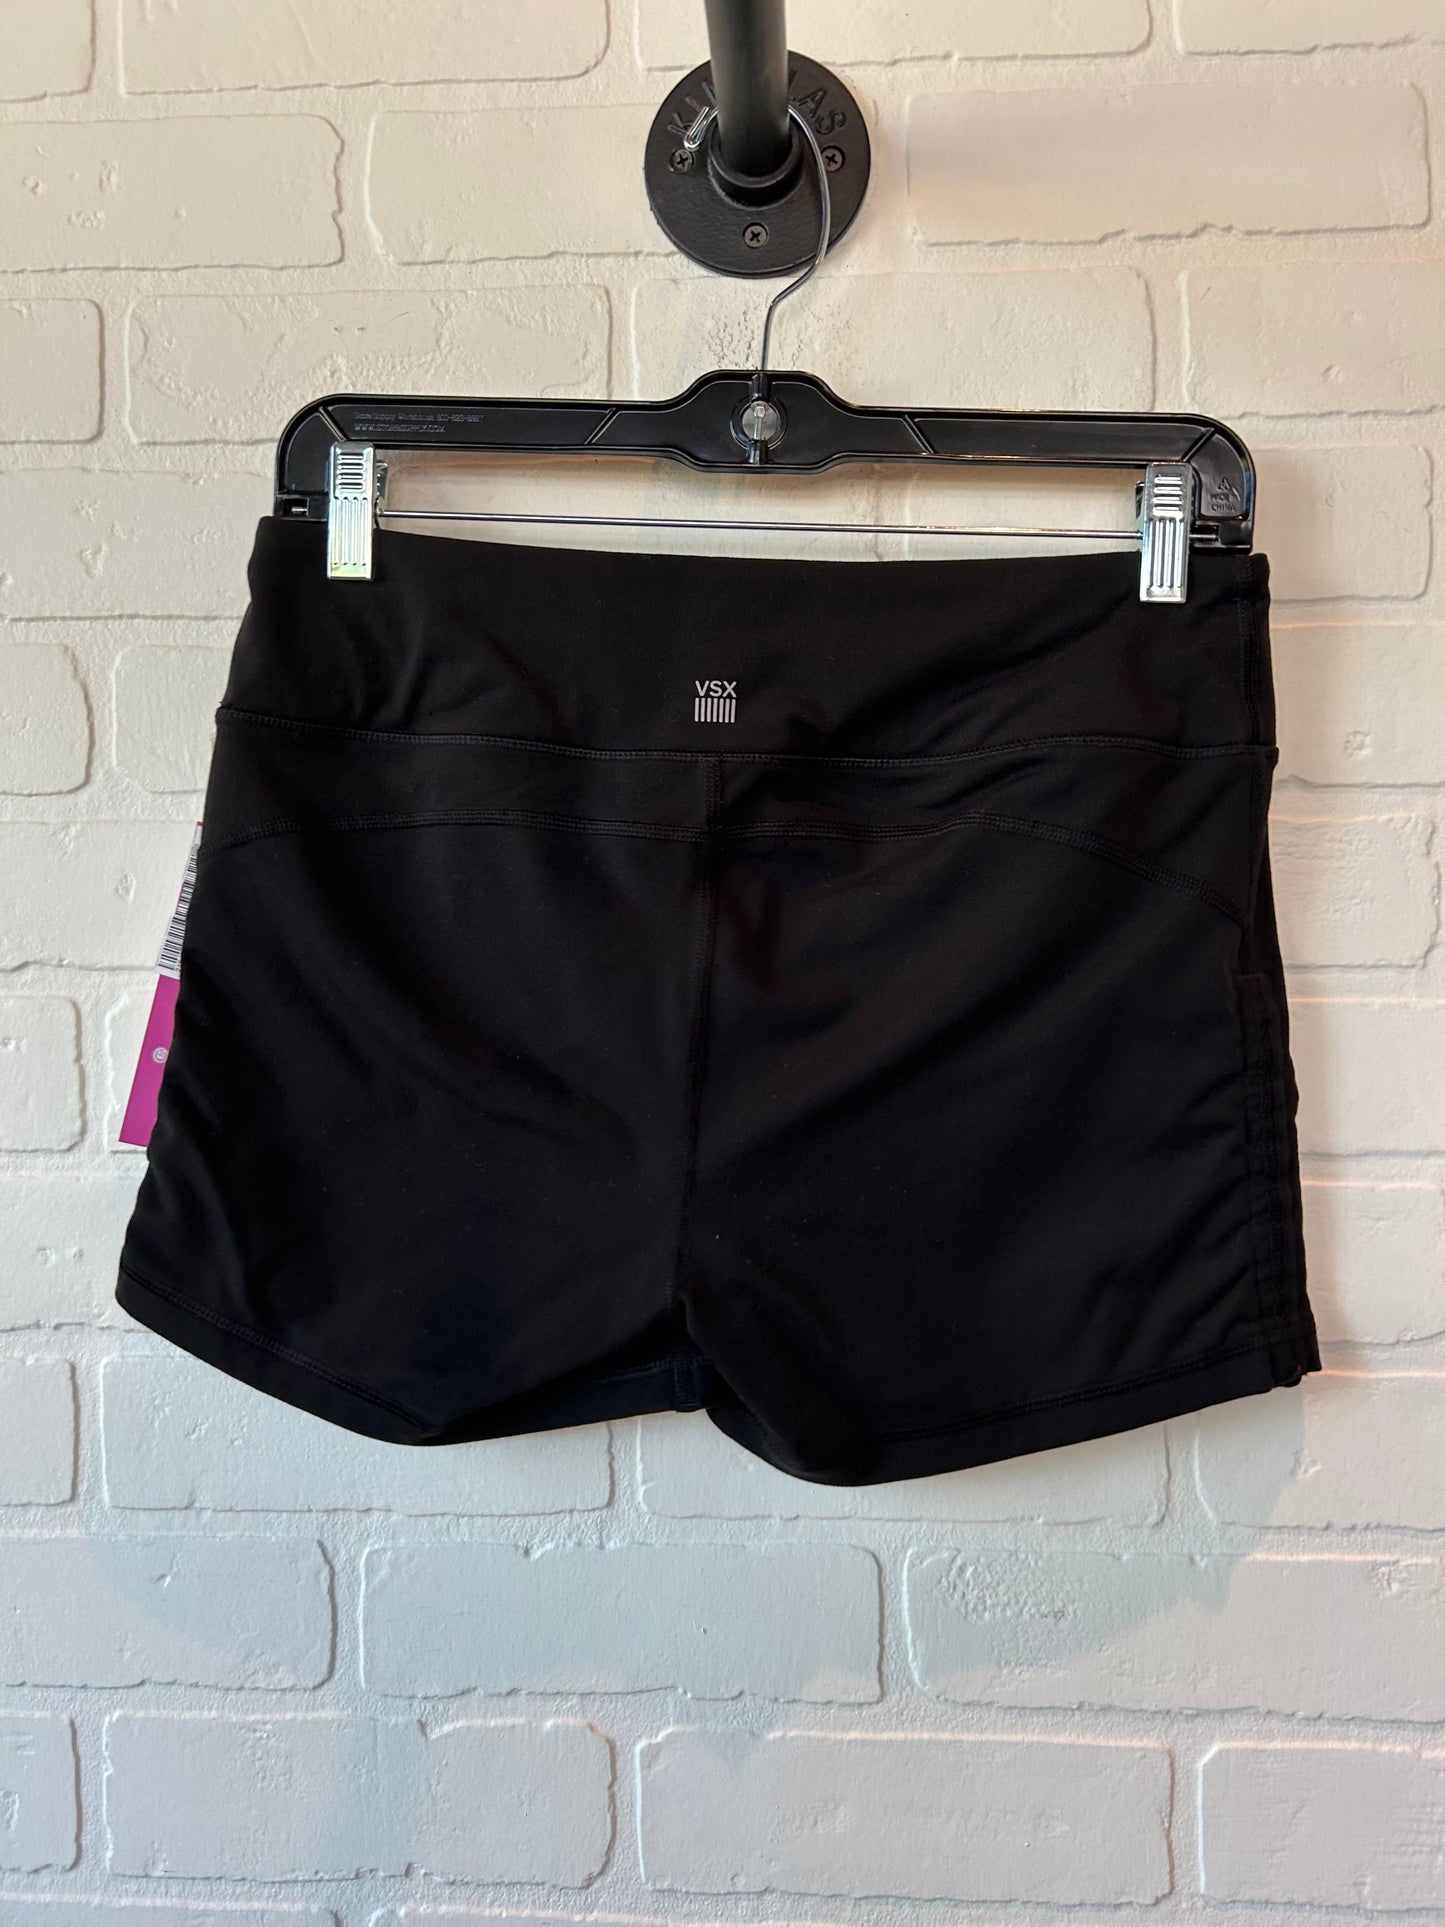 Black Athletic Shorts Victorias Secret, Size 8